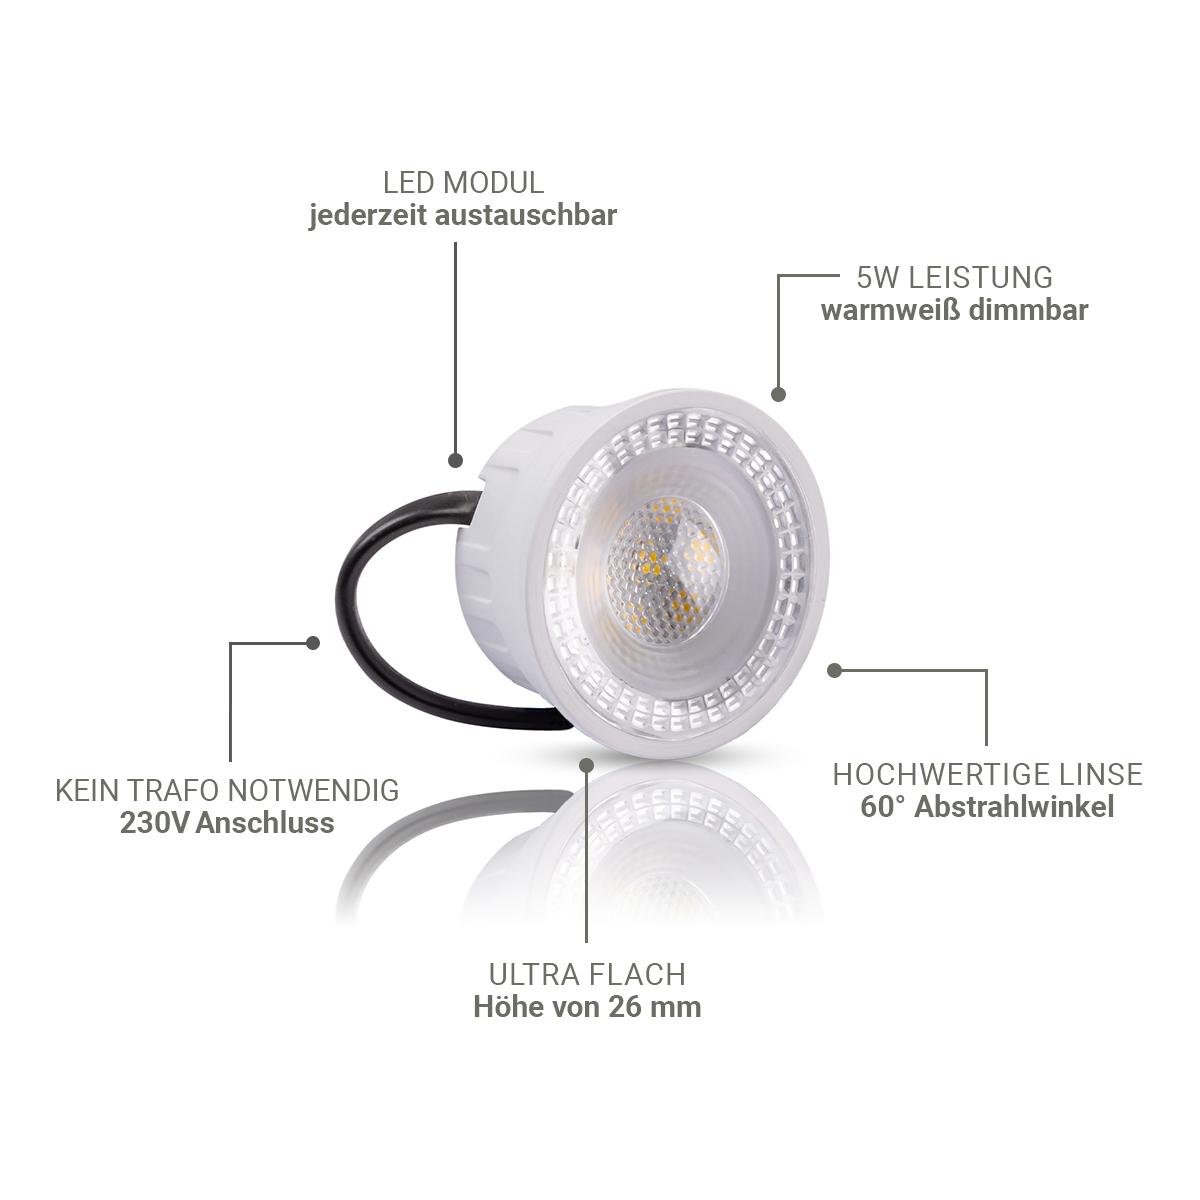 Flacher Aufbaustrahler eckig IP44 Deckenleuchte - Farbe: schwarz - LED Leuchtmittel: 5W Warmweiß 230V dimmbar 60°